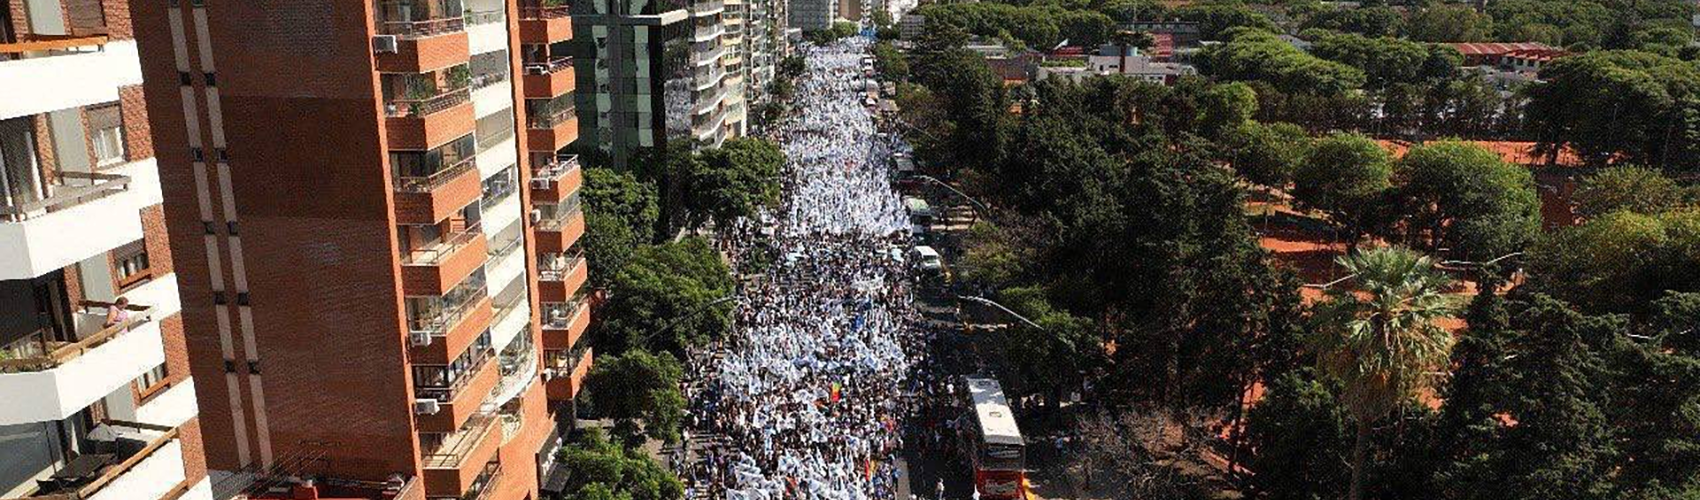 Na Argentina, jovens marcham em peso no Dia da Memória, Verdade e Justiça